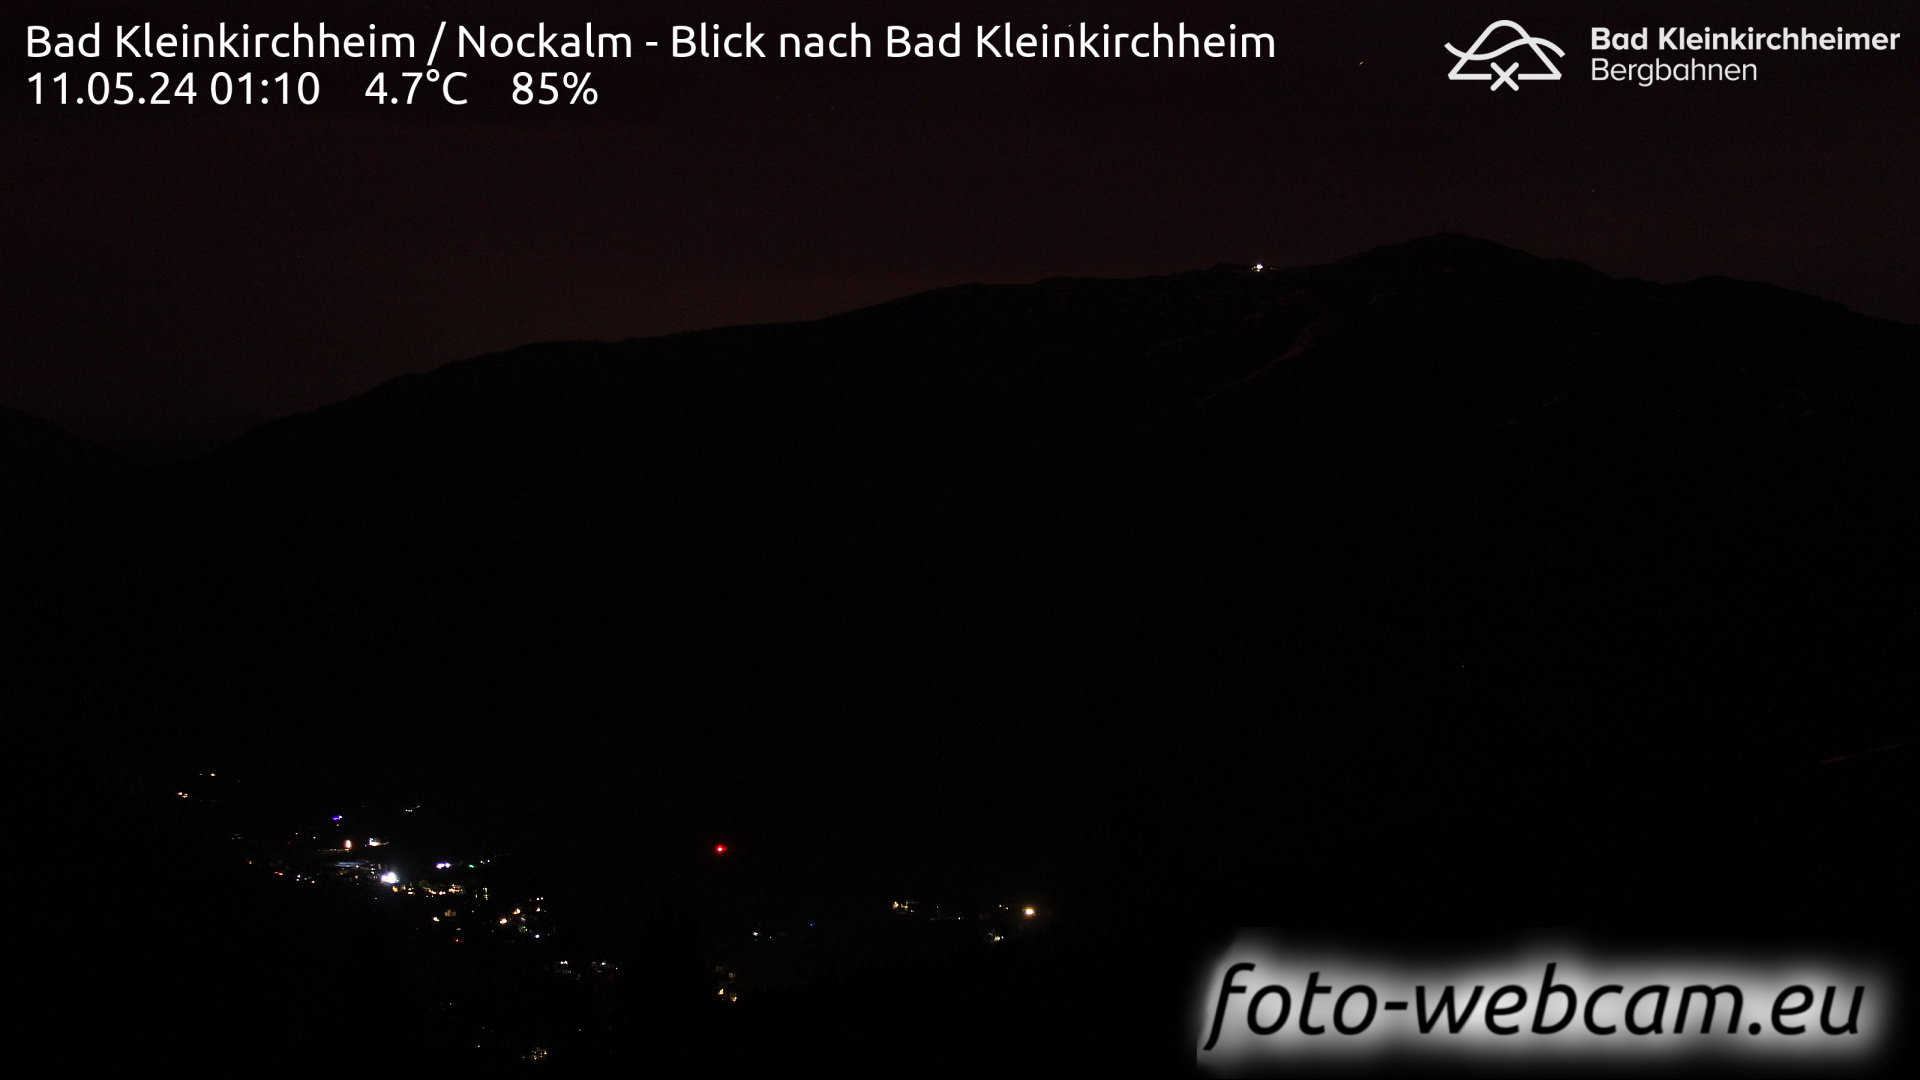 Bad Kleinkirchheim Lun. 01:17